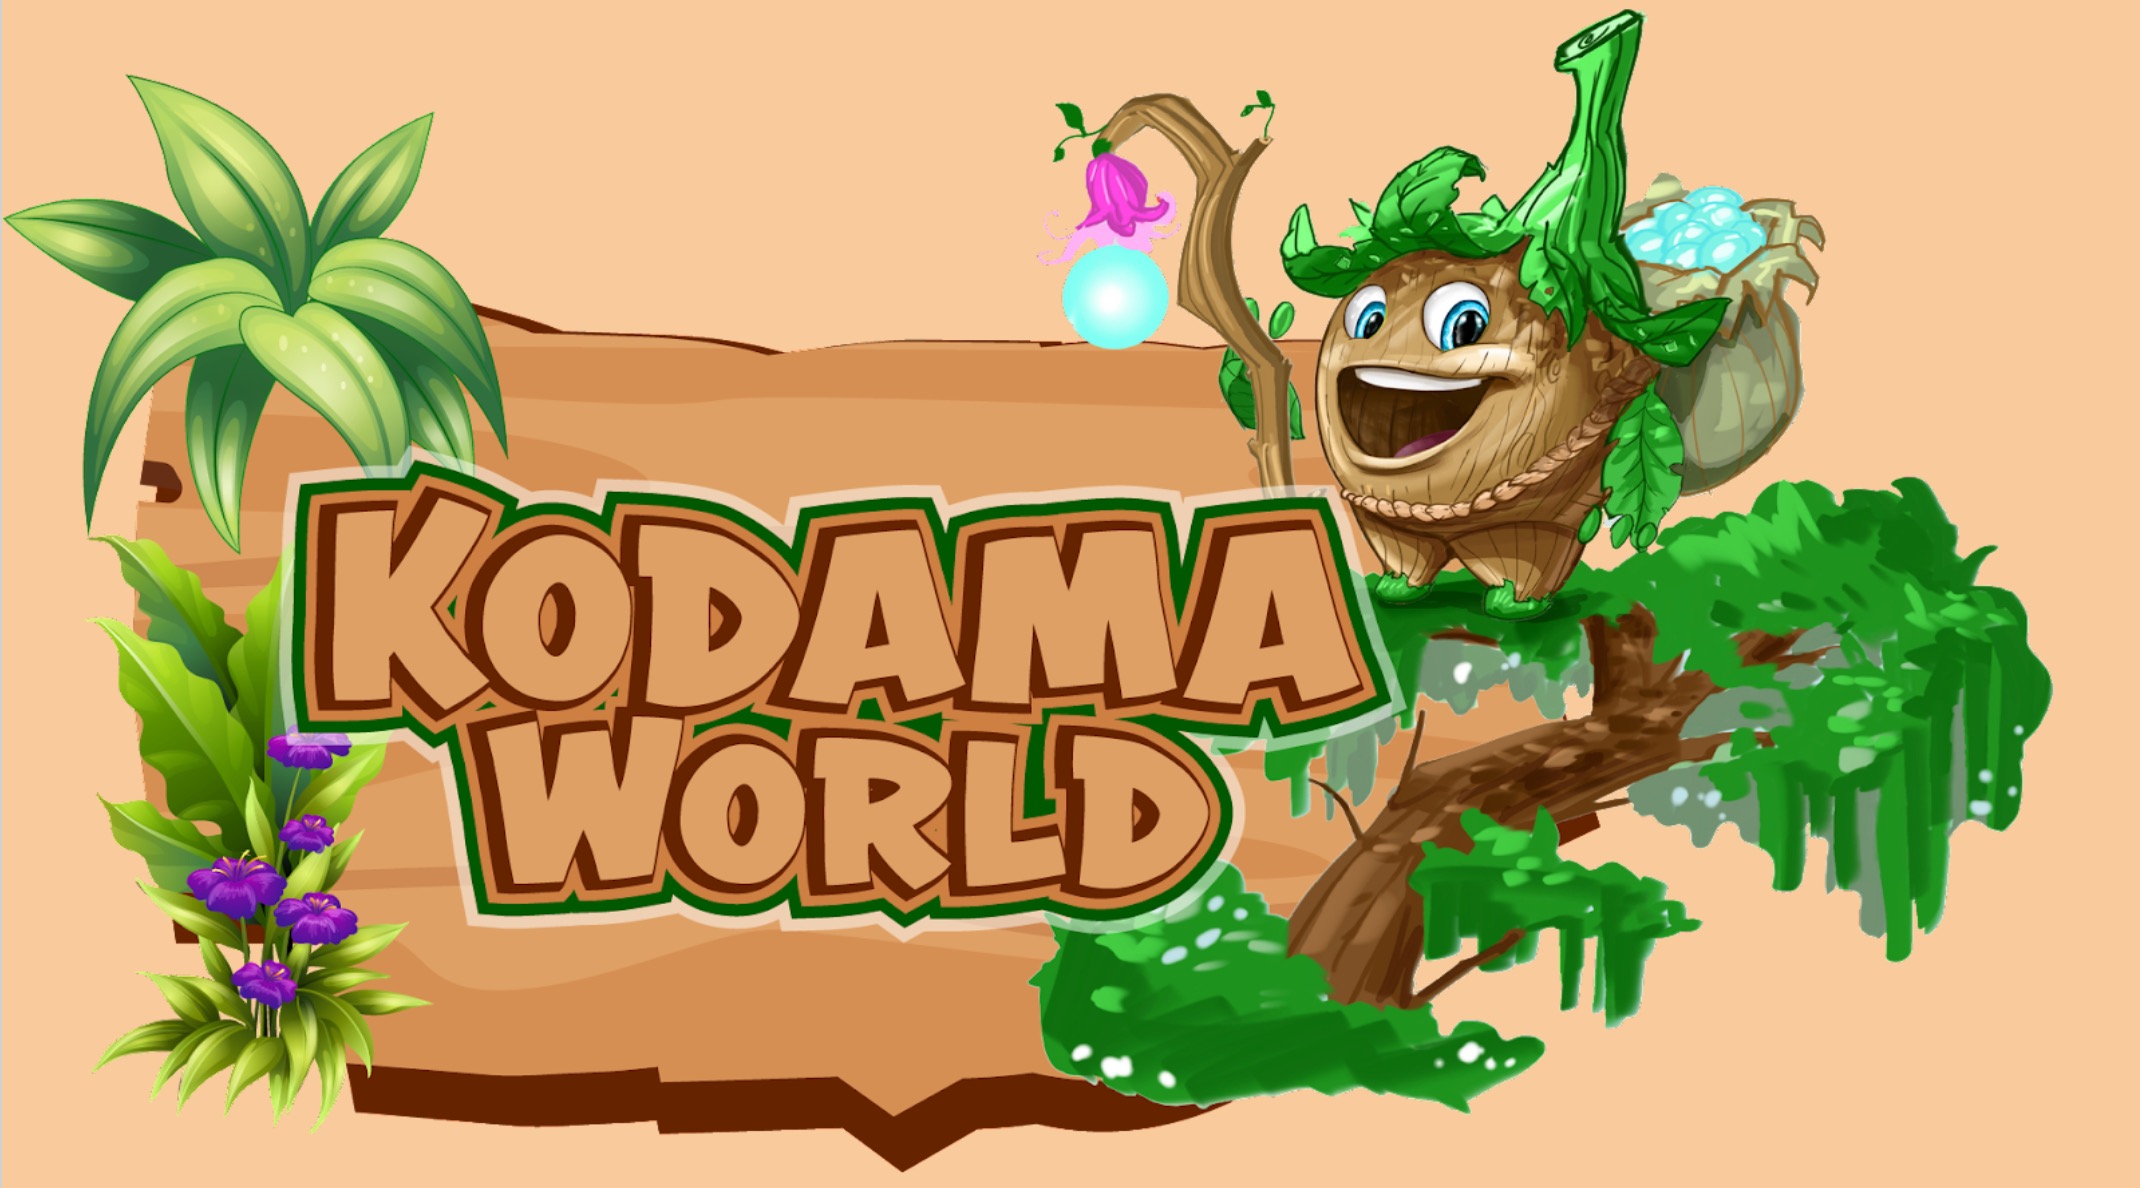 Kodama World with Kodi by the sign